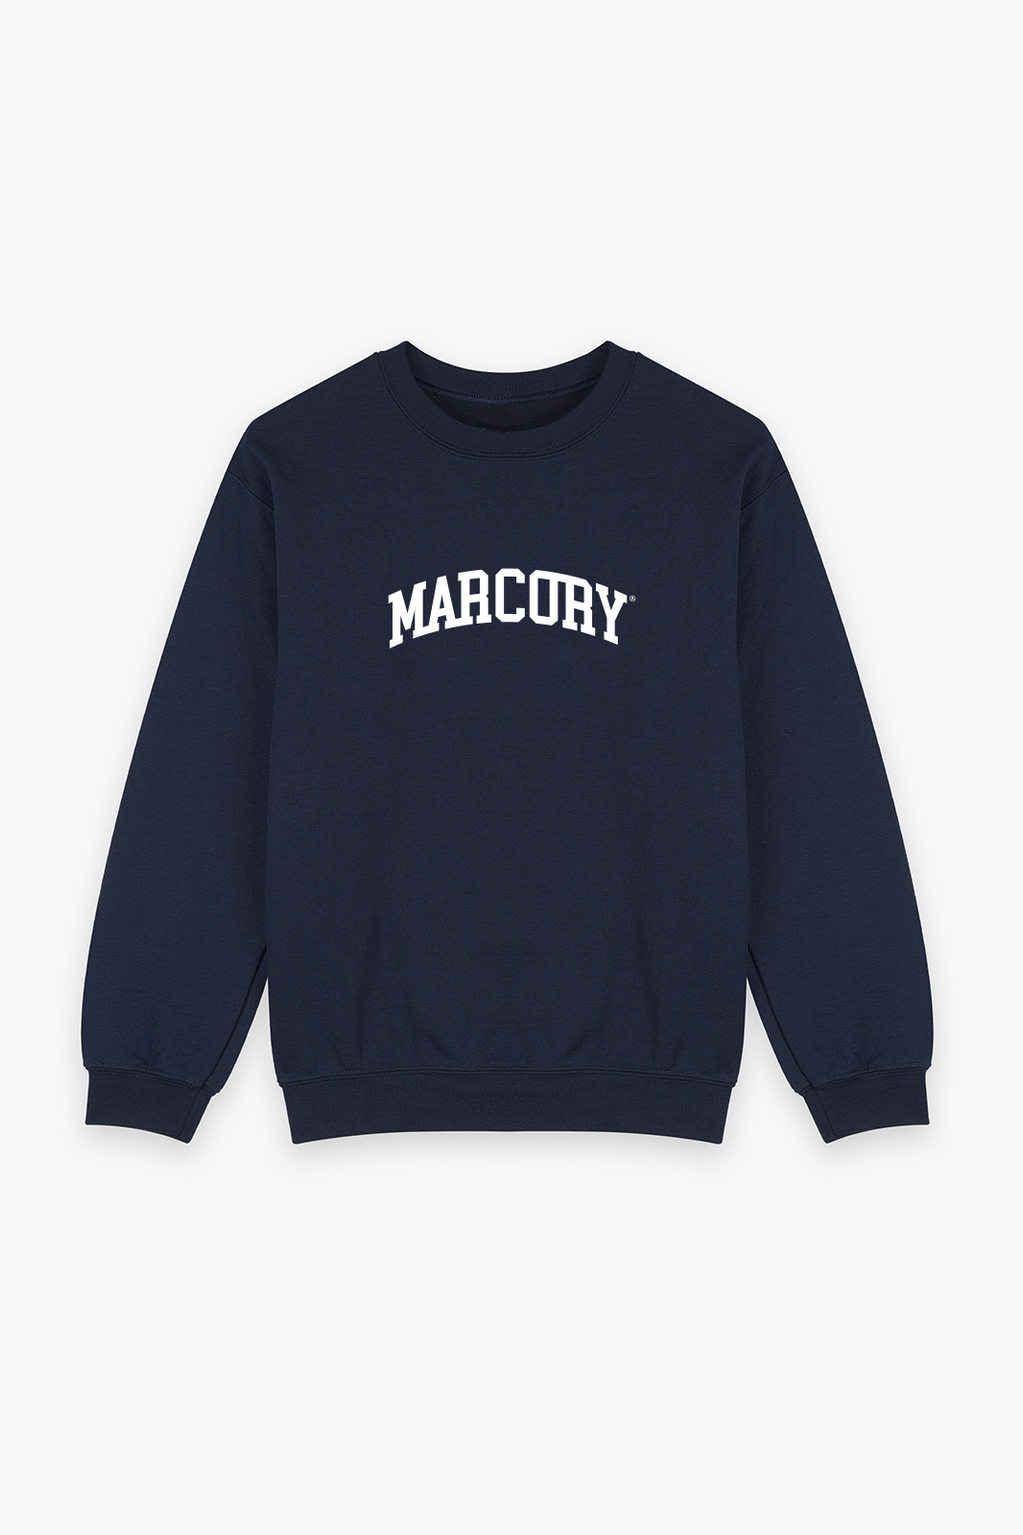 Marcory Sweatshirt Navy